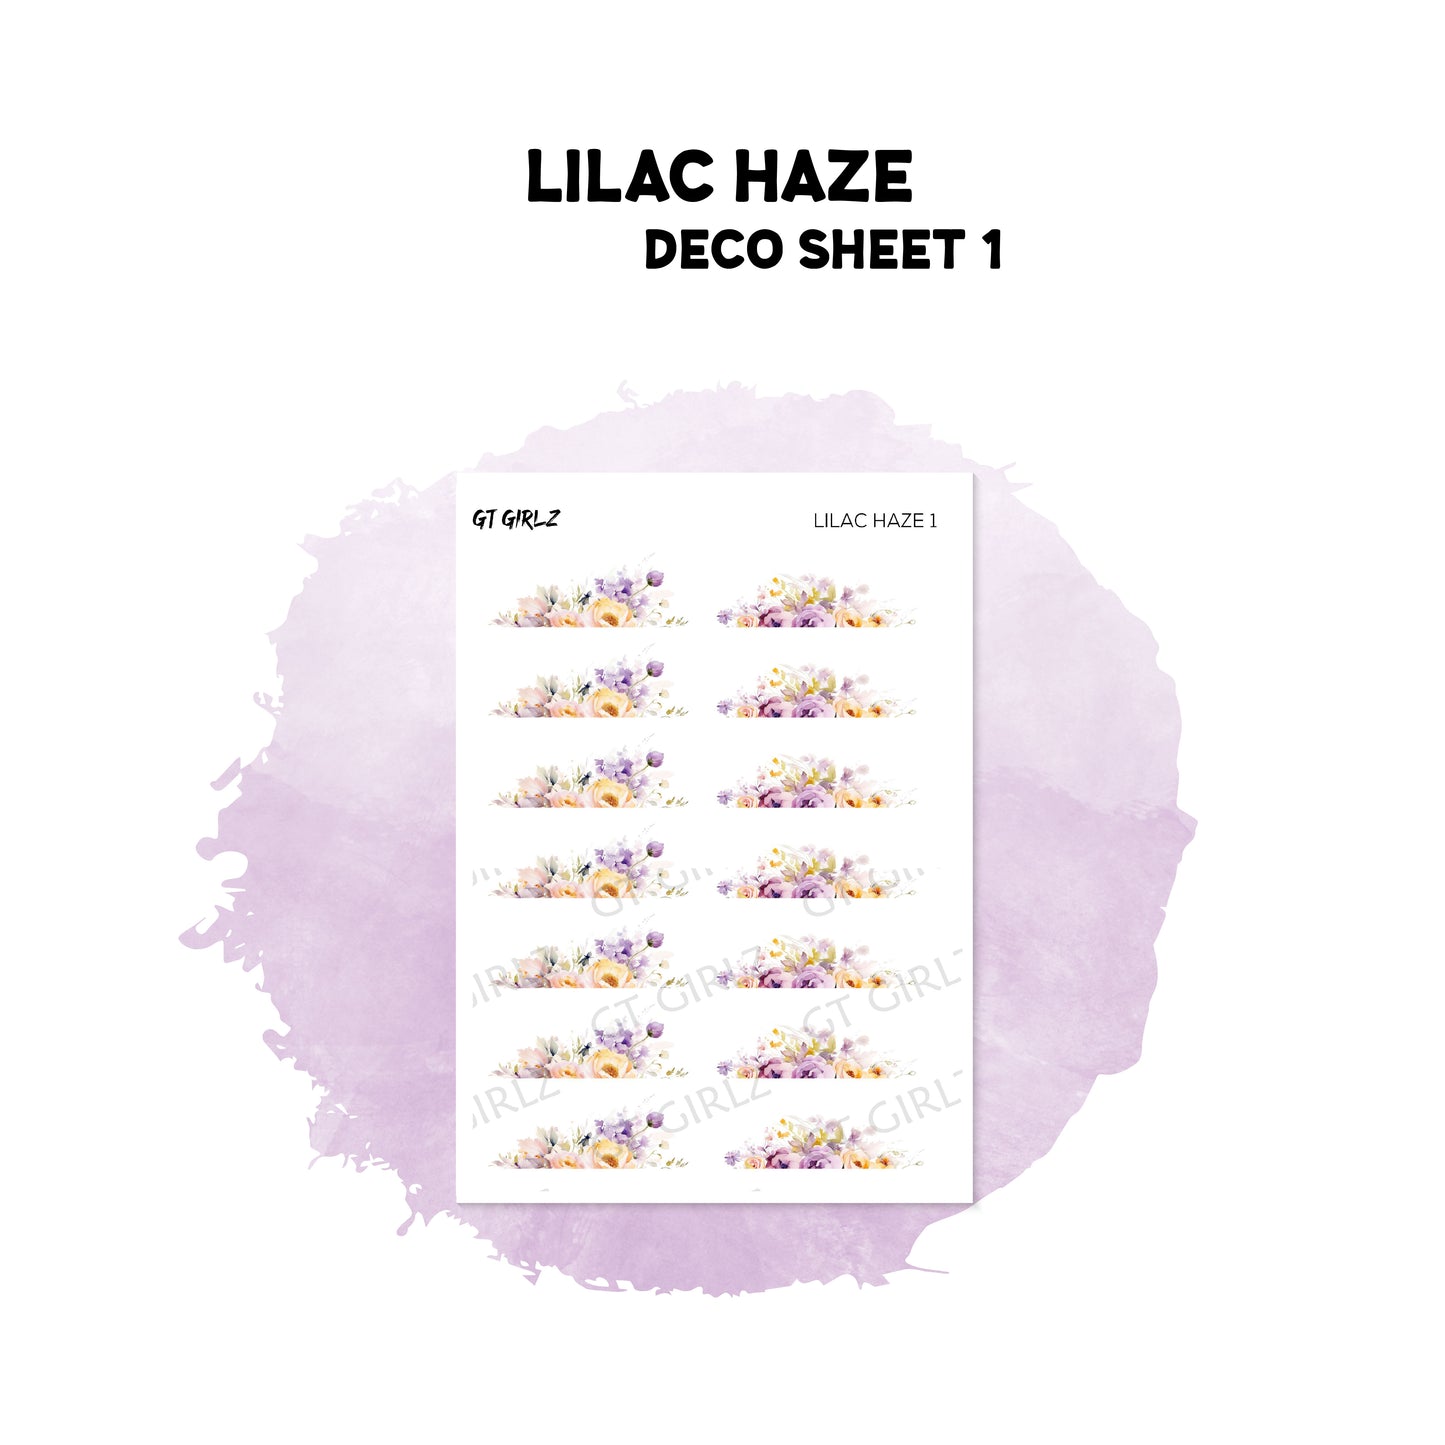 Lilac Haze Deco 1